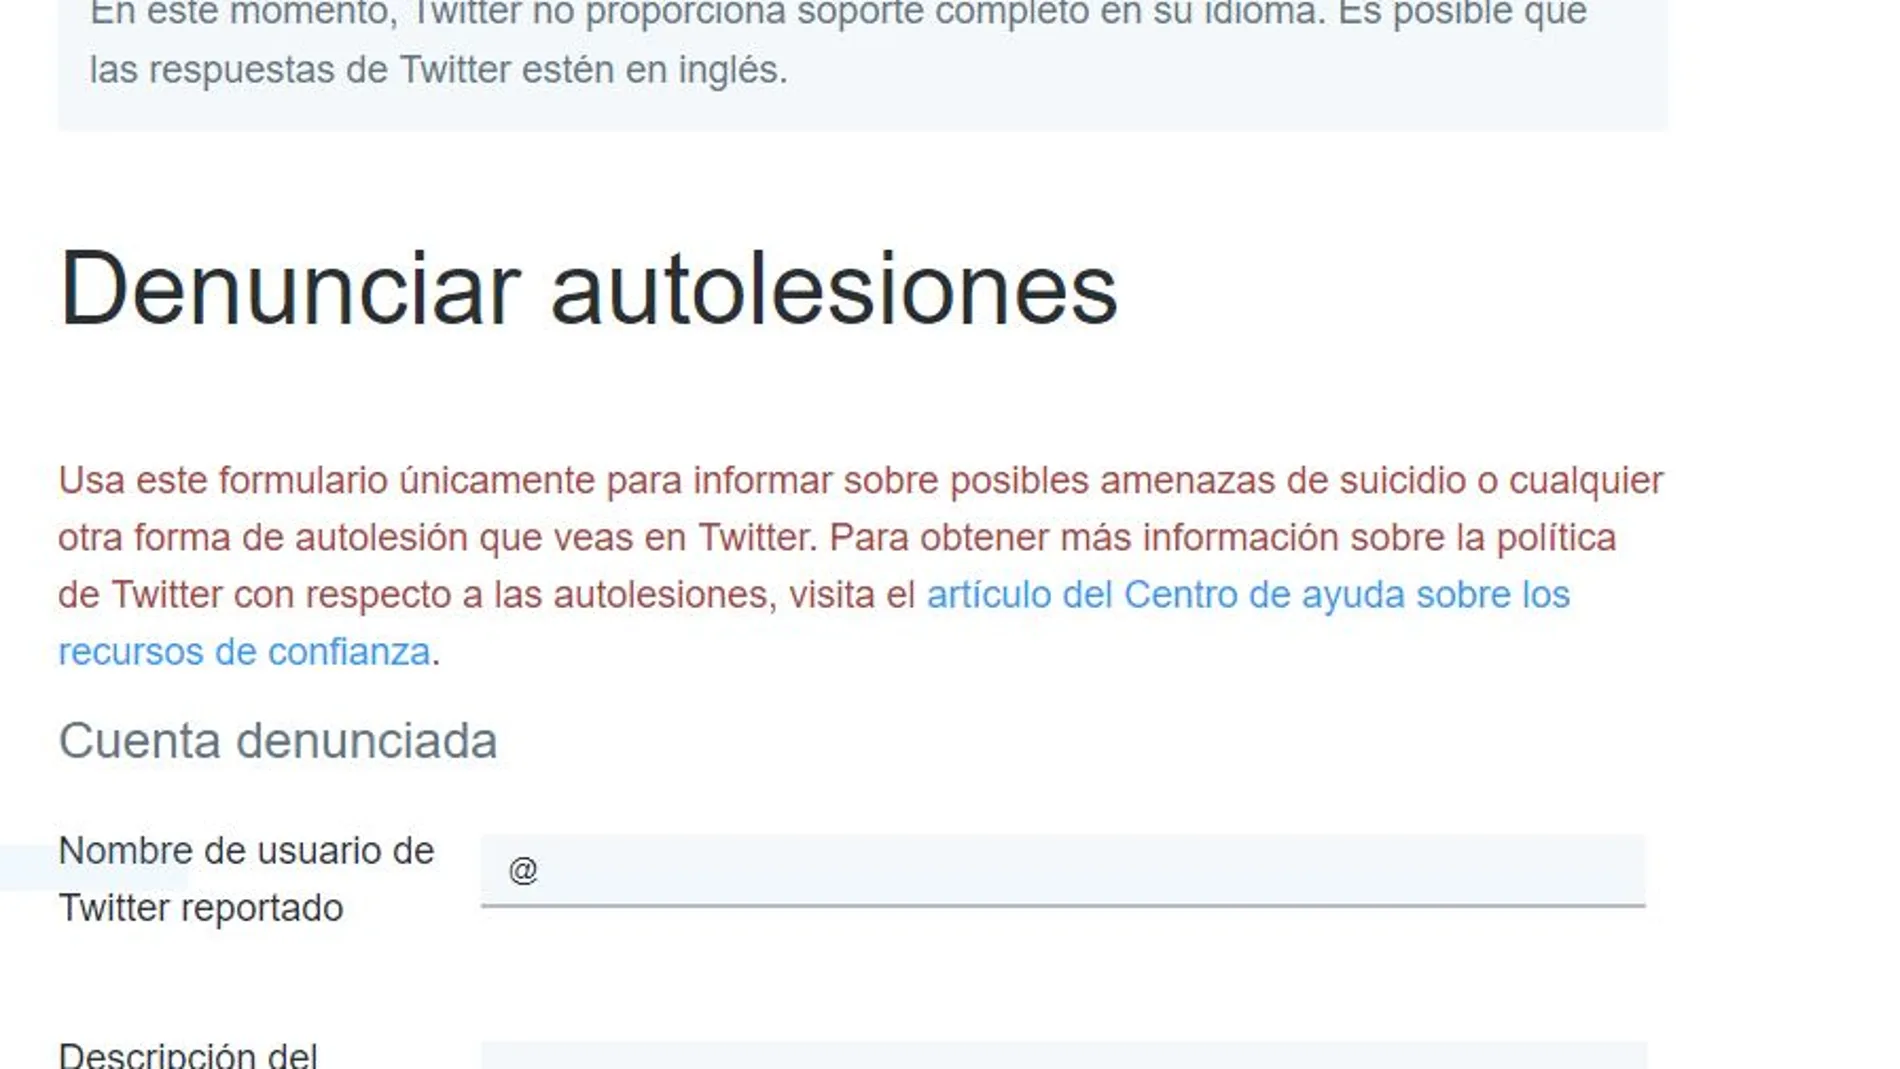 Twitter ha abierto un formulario para alertar de conductas suicidas